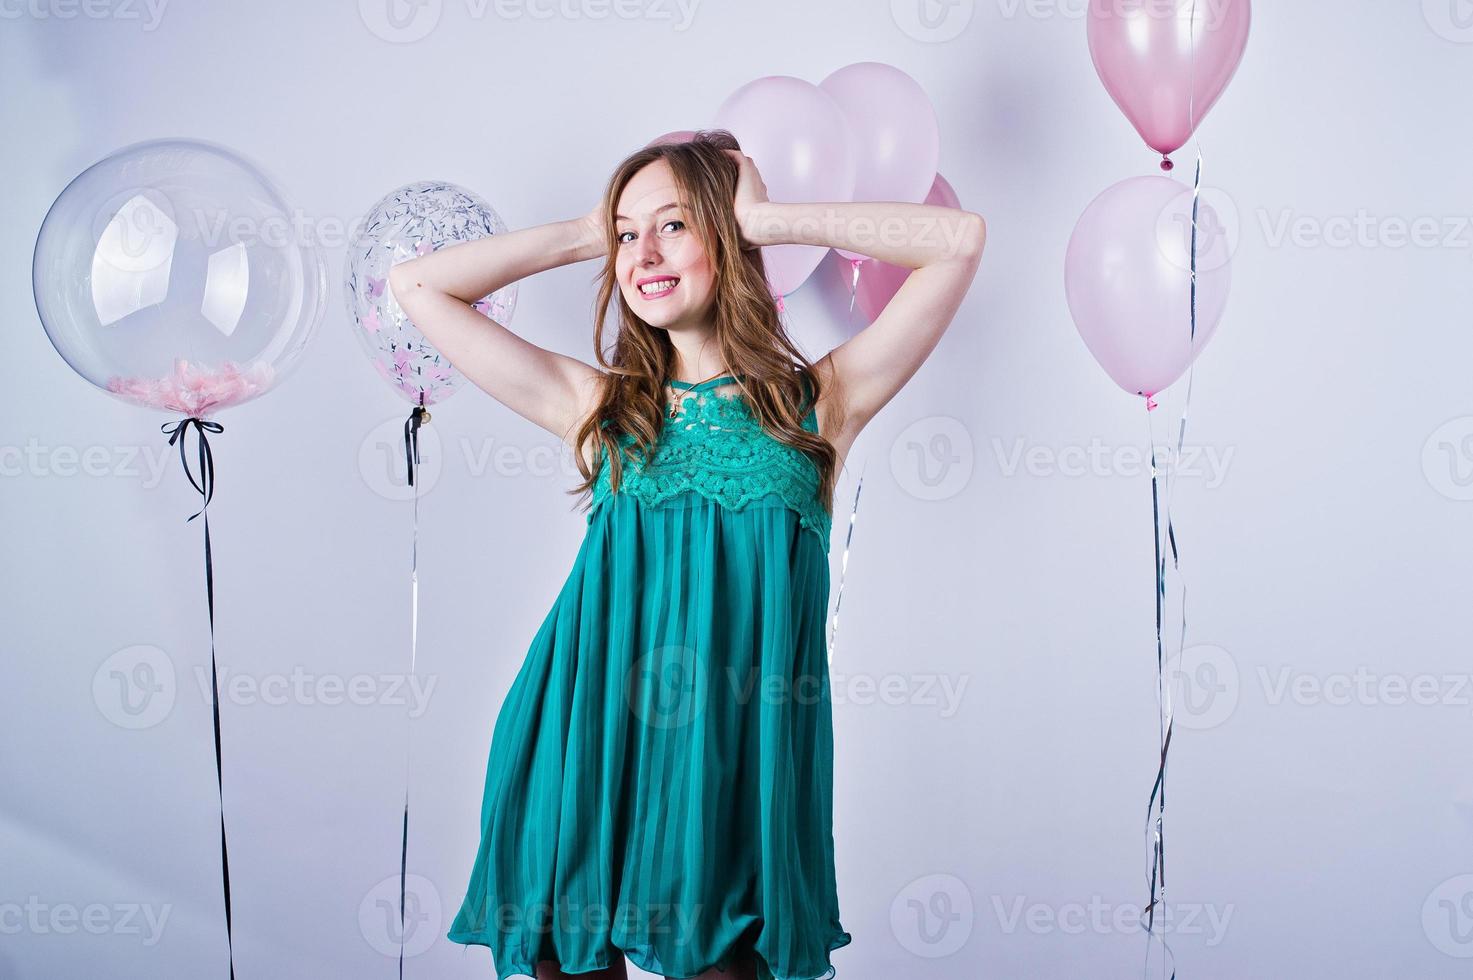 garota feliz no vestido verde turquesa com balões coloridos isolados no branco. comemorando o tema do aniversário. foto